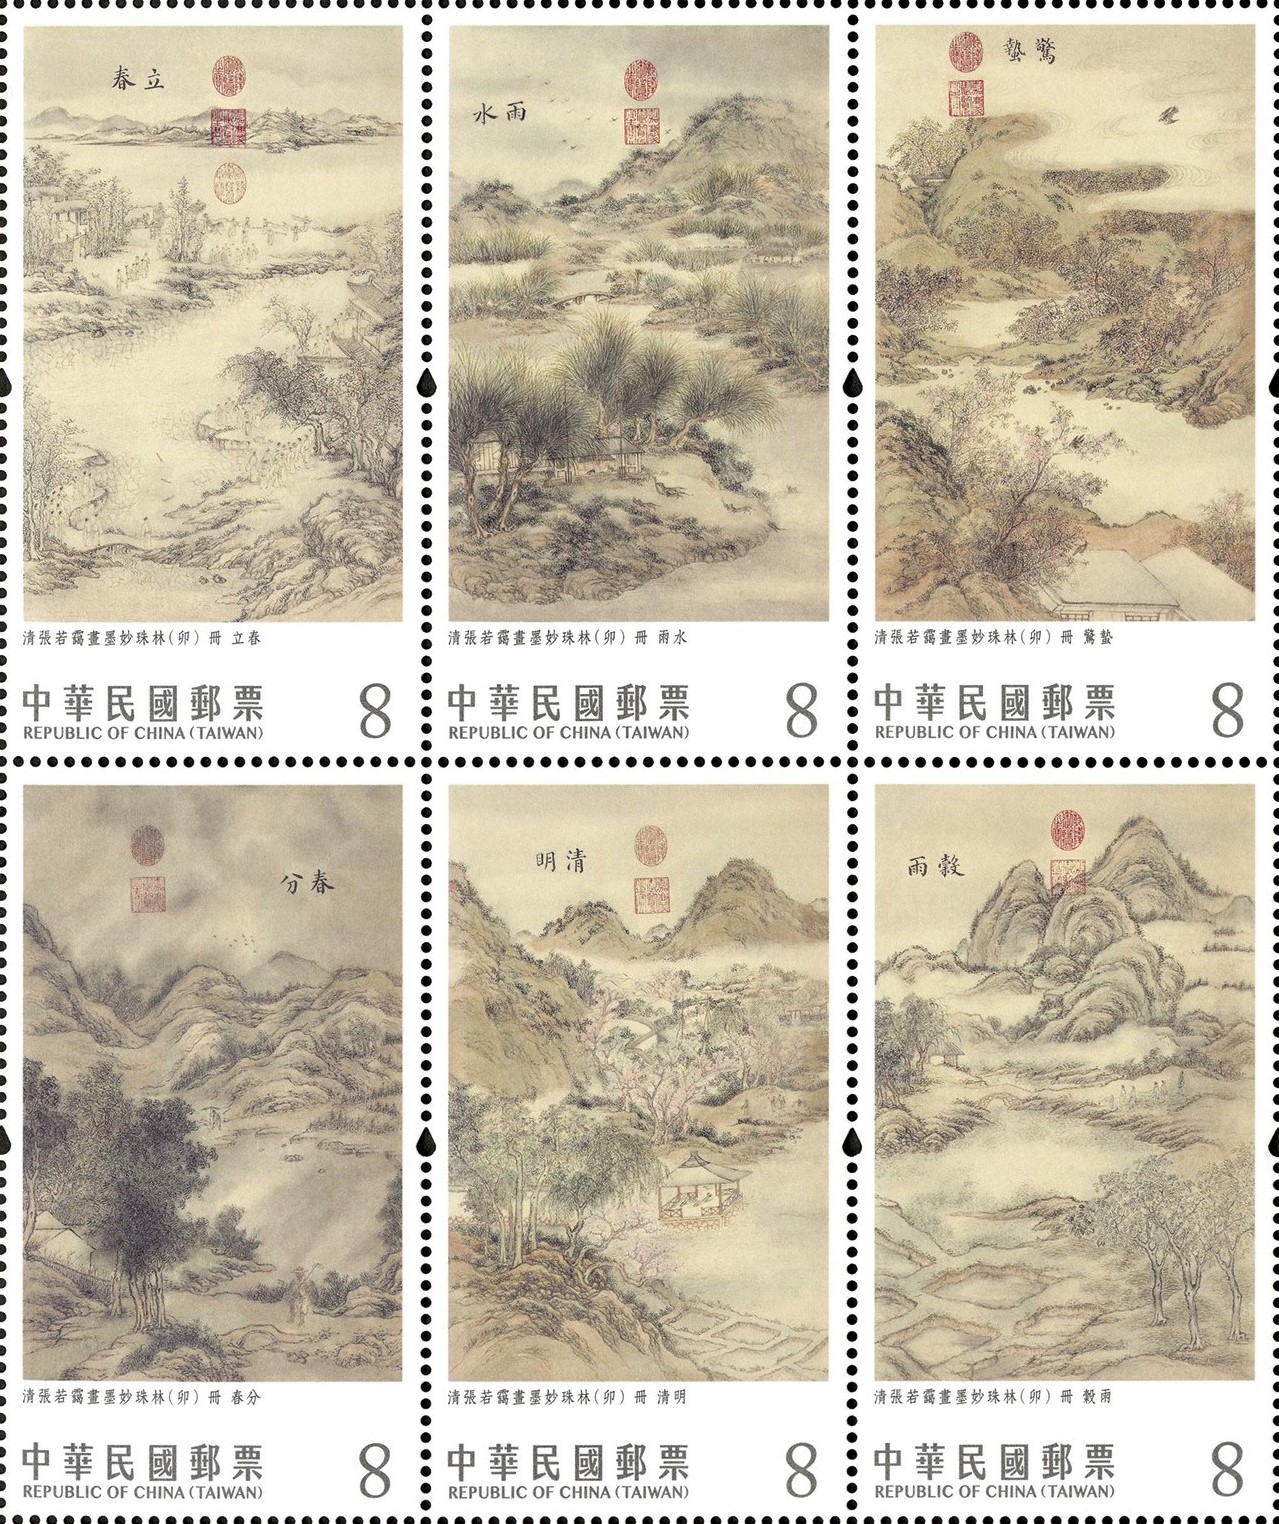 112年第1季發行郵票計畫